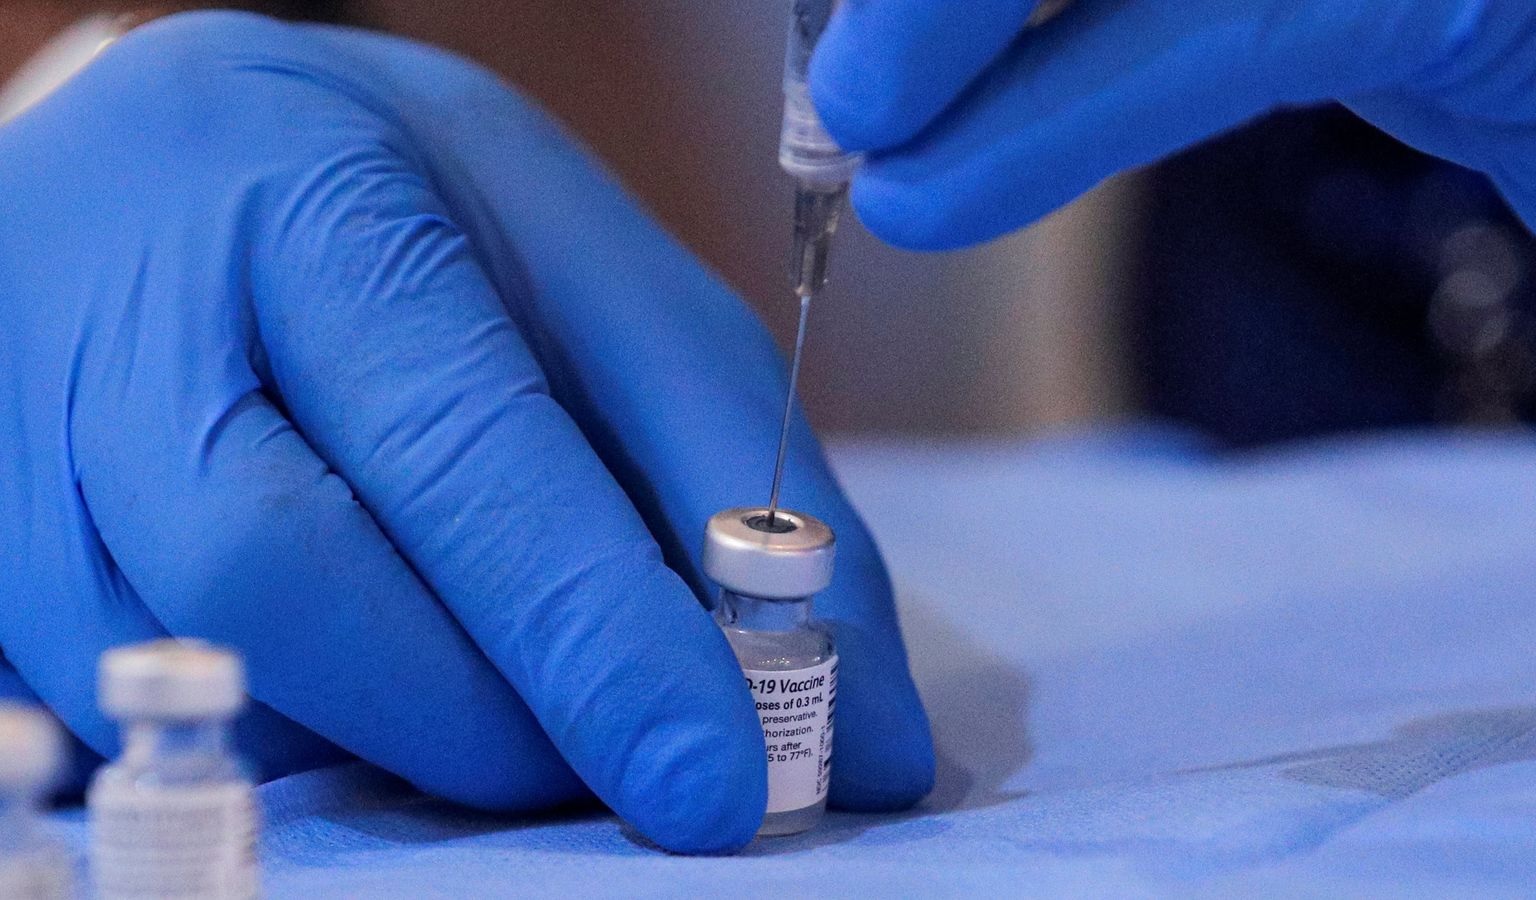 إنجلترا ستوسع أهلية اللقاح لتشمل الأشخاص فوق سن الـ 18 وسط تفشي سلالة الهند